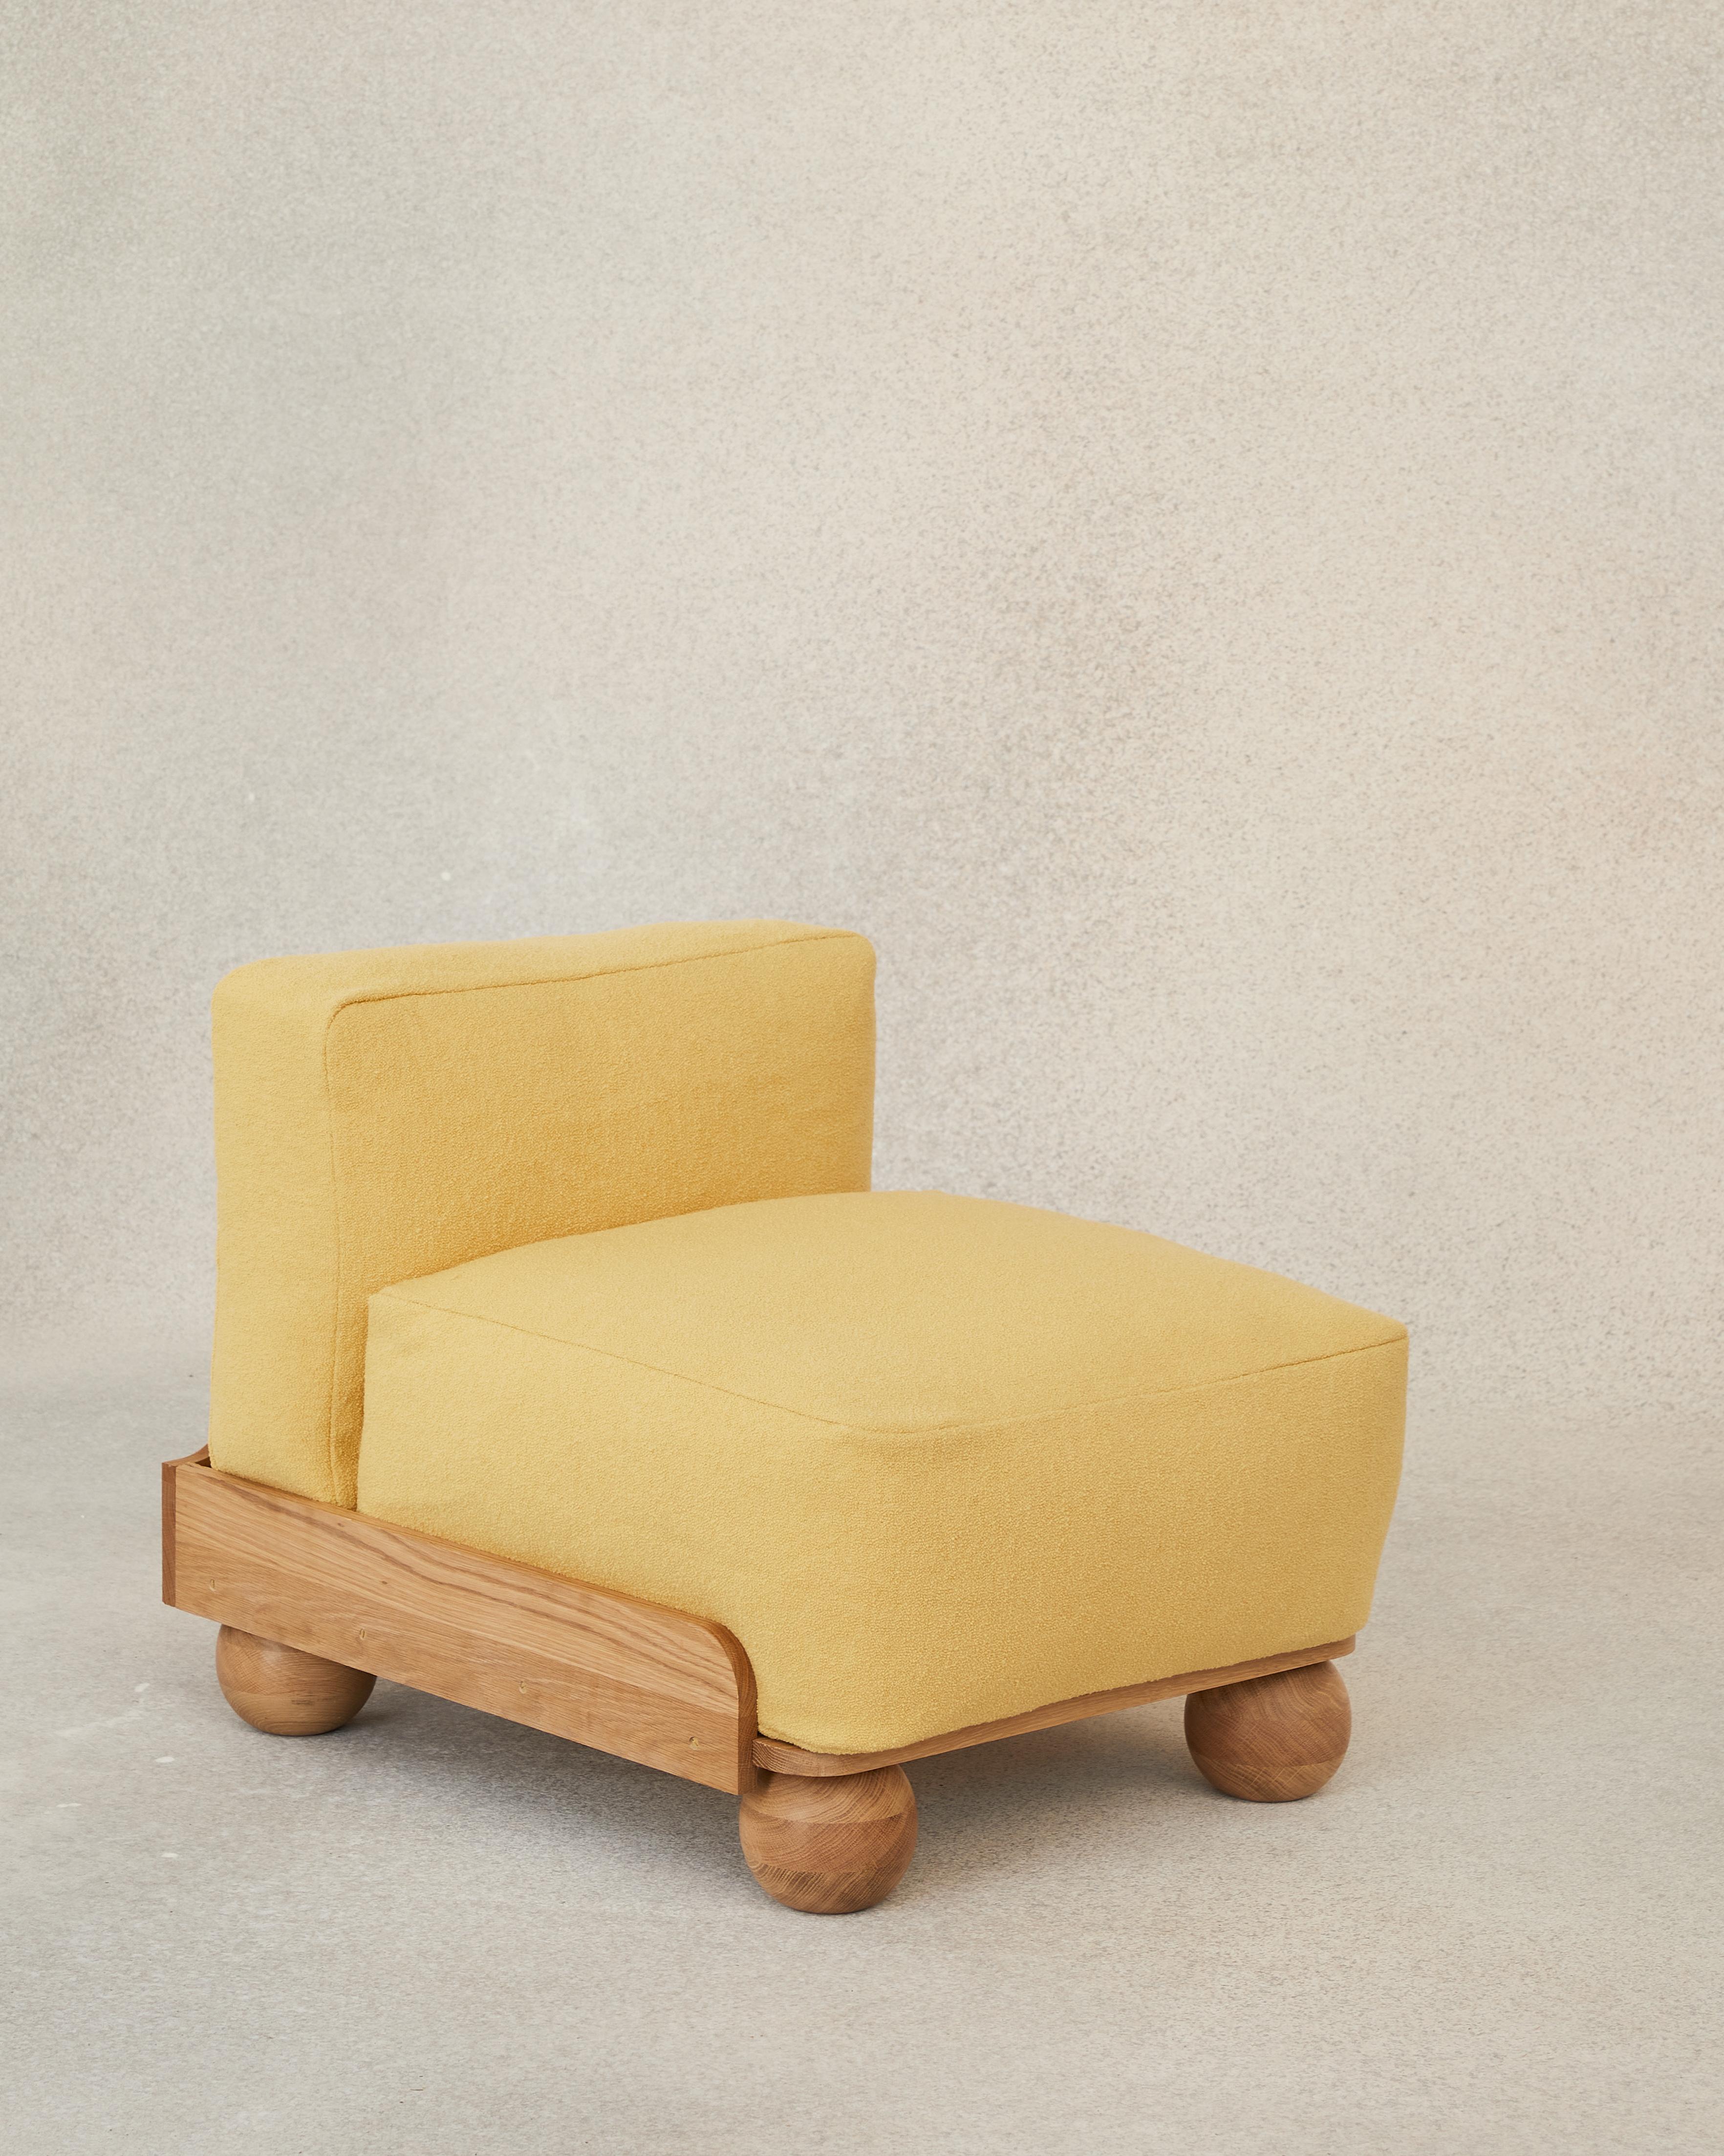 Le Cove Slipper est un siège sans accoudoirs au design épuré, conçu pour être utilisé seul ou pour rejoindre sa famille modulaire : combiné à un canapé de n'importe quelle longueur ou associé au pouf Cove pour former une chaise longue.

Comme ses